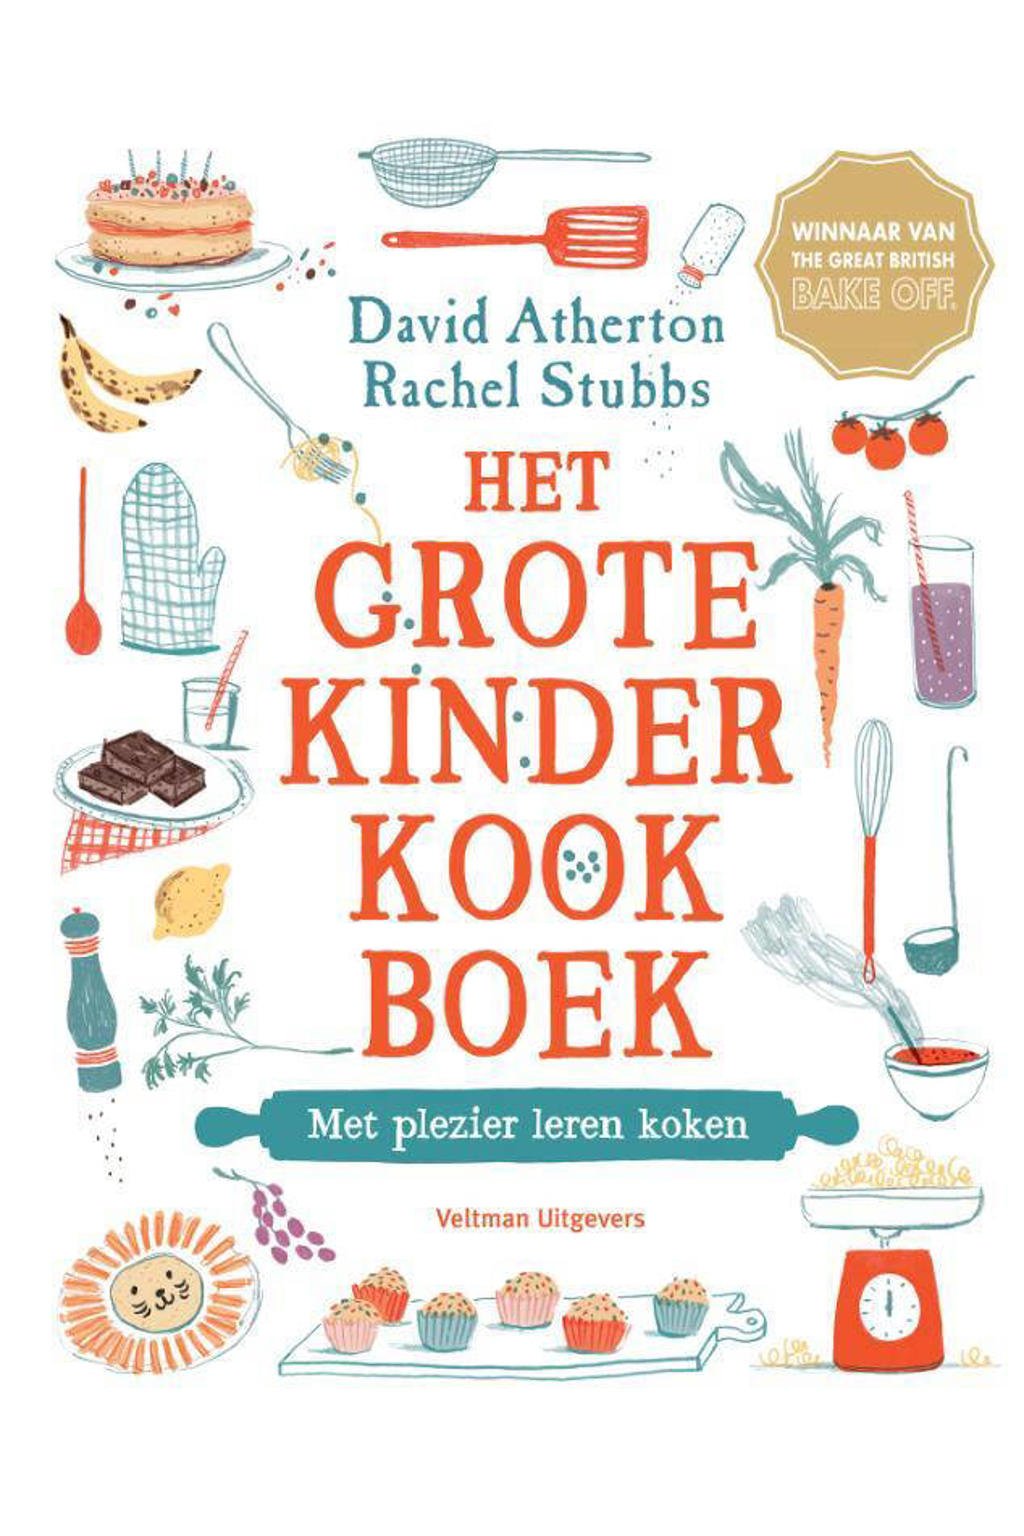 Het Grote Kinderkookboek - David Atherton en Rachel Stubbs